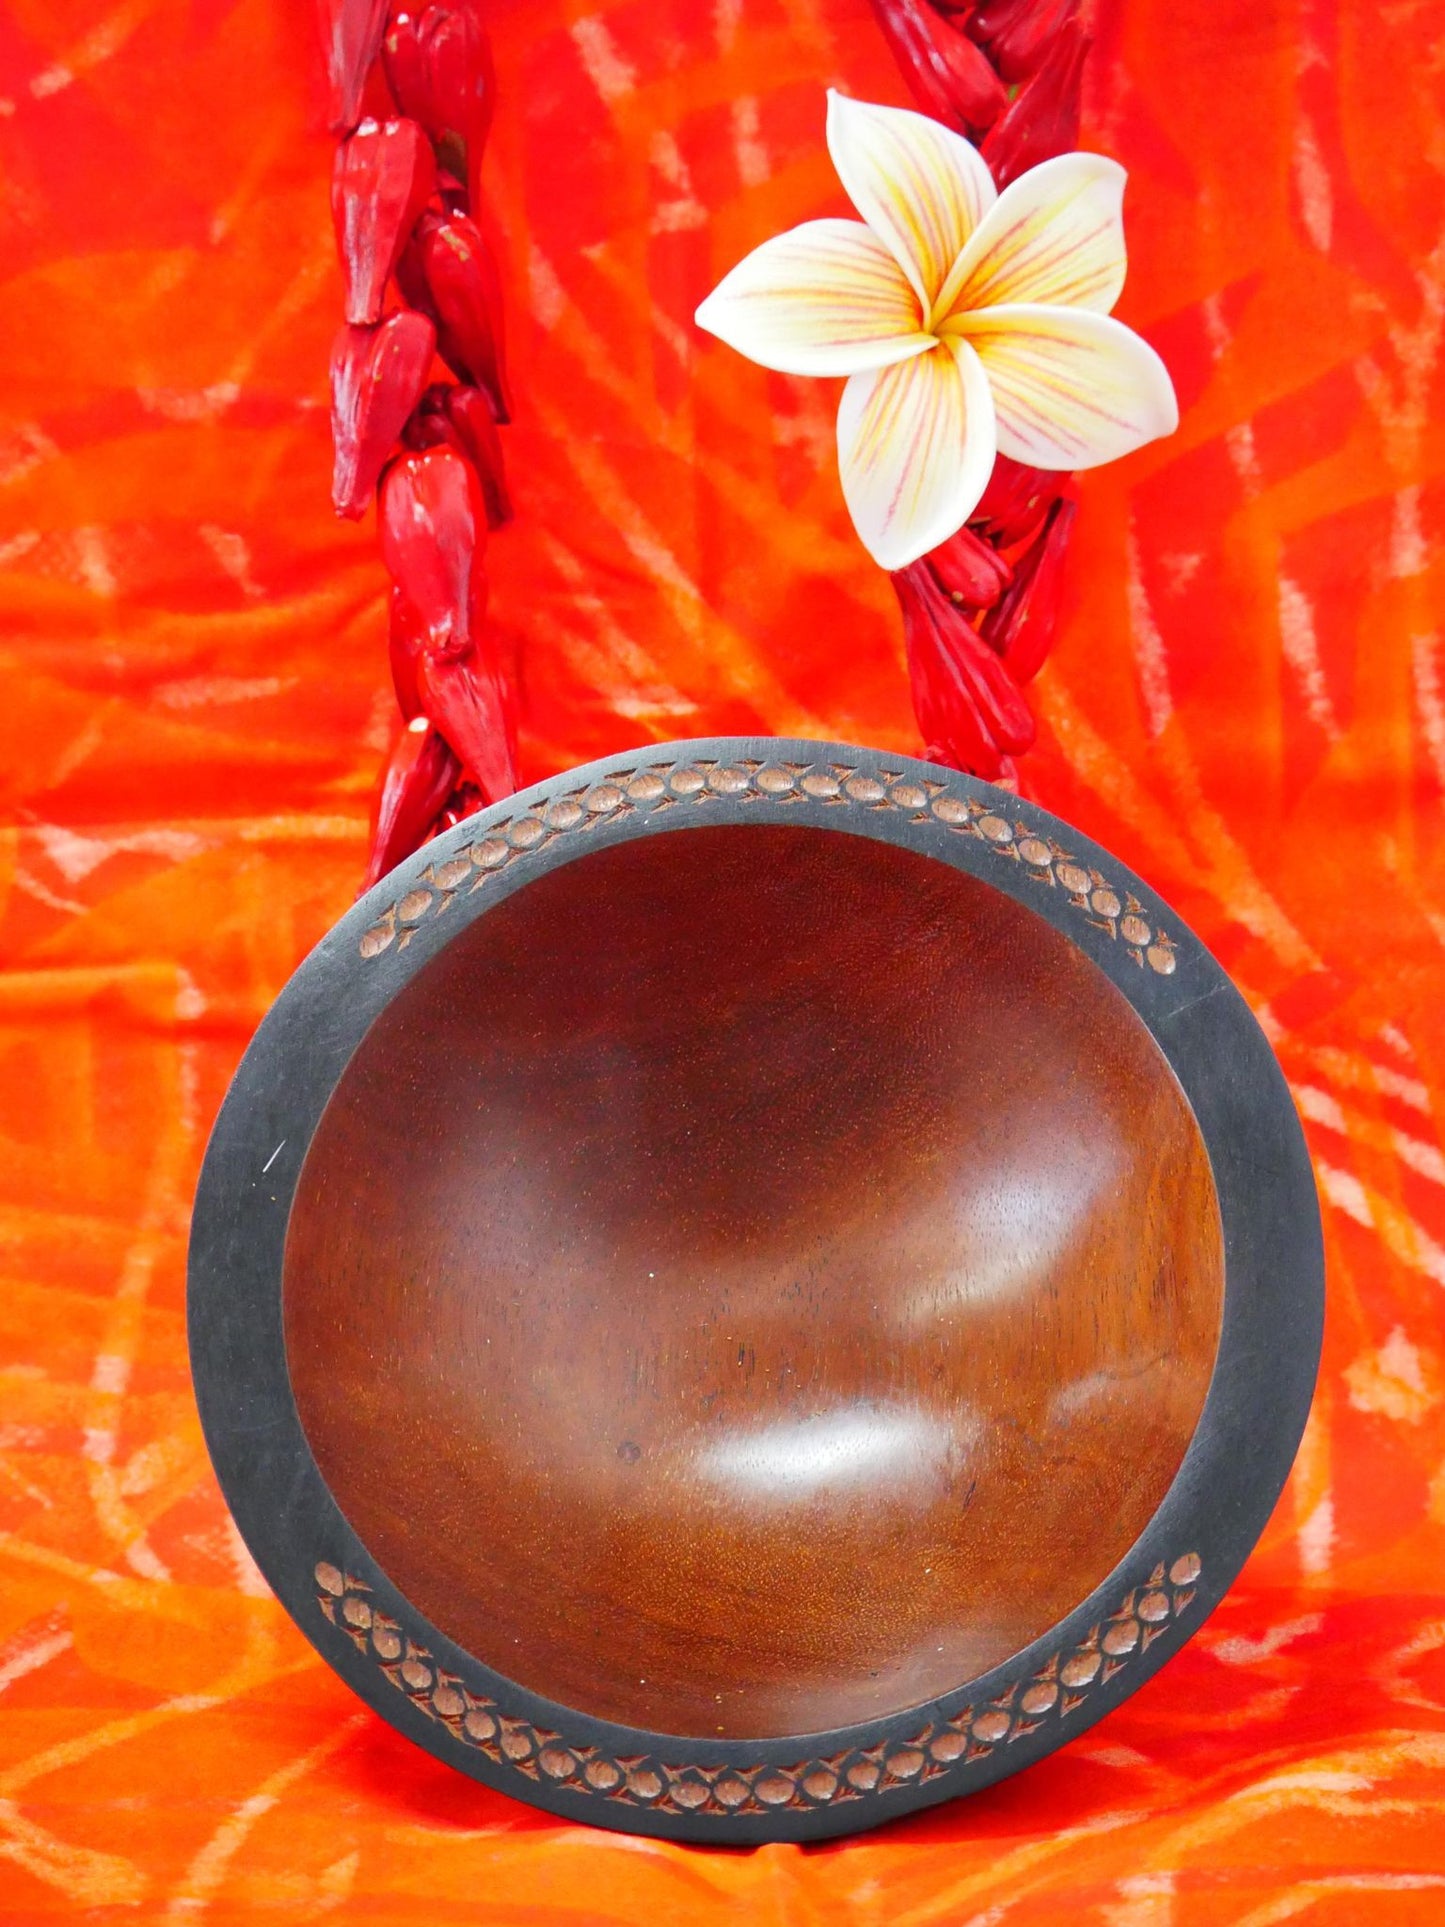 Samoan Tanoa Bowl (7 inch)